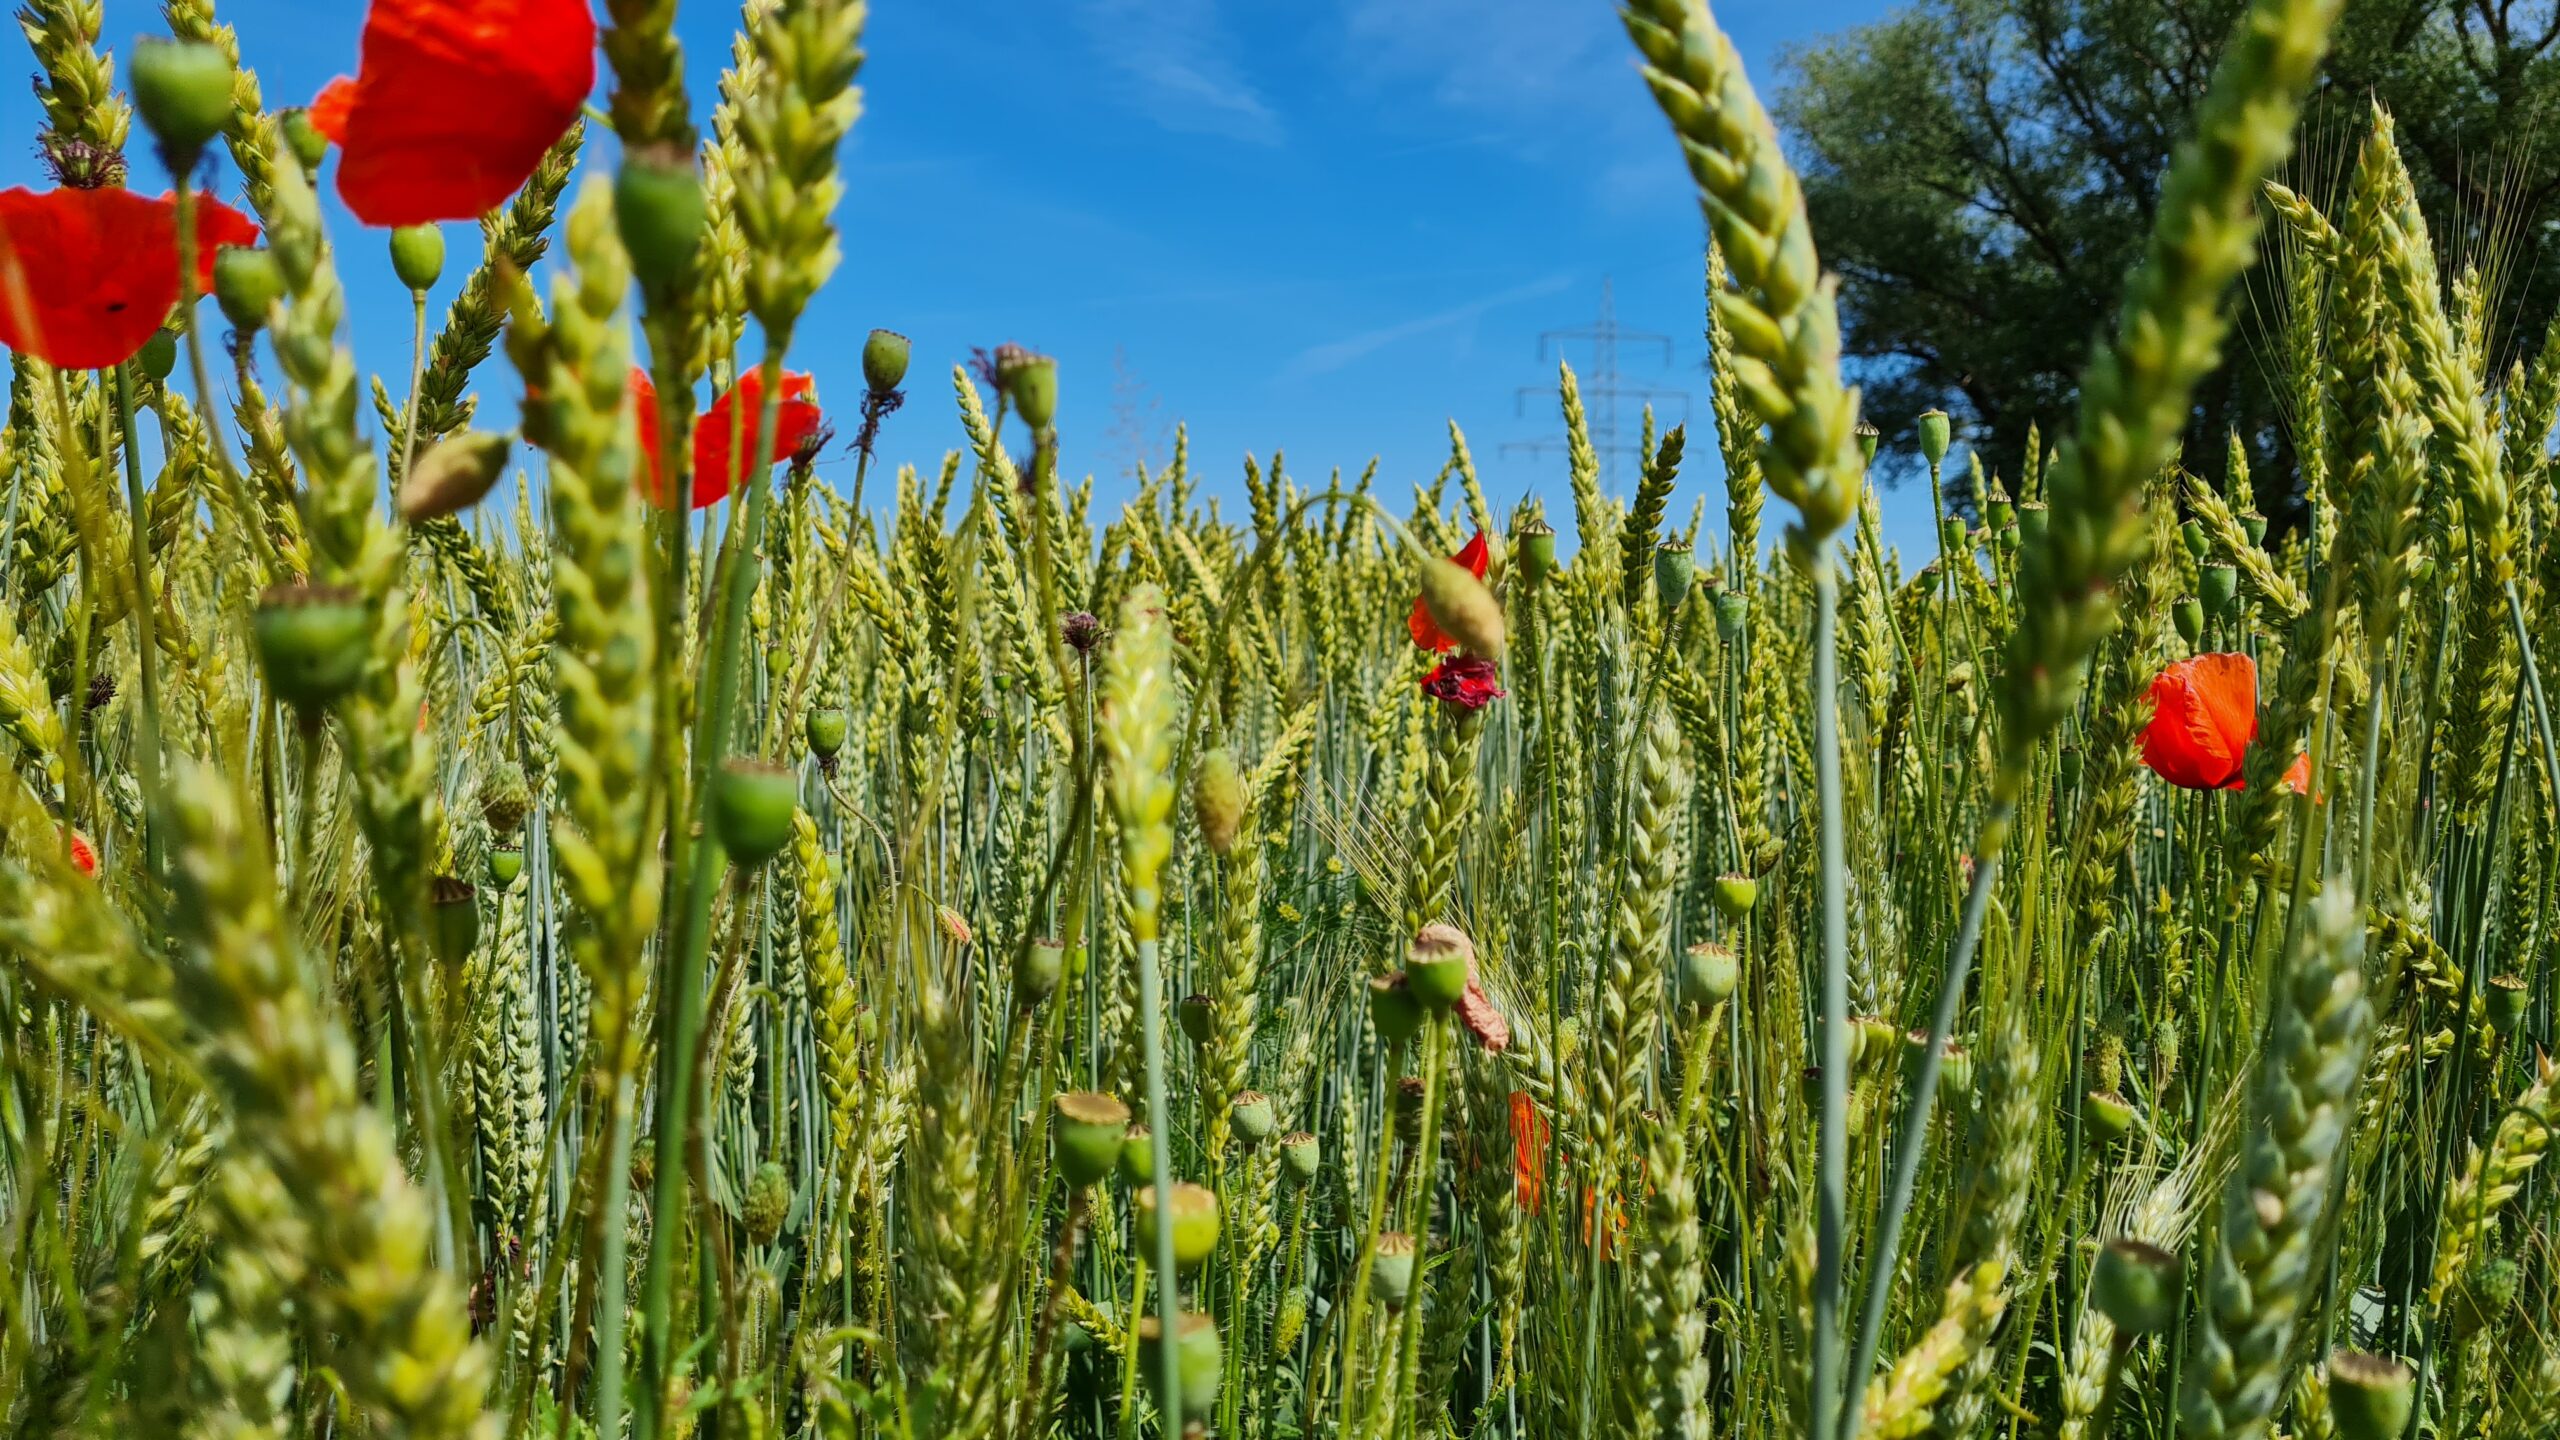 Feld mit Getreide Weizen und Mohnblumen - divers wie die Natur es geschaffen hat.